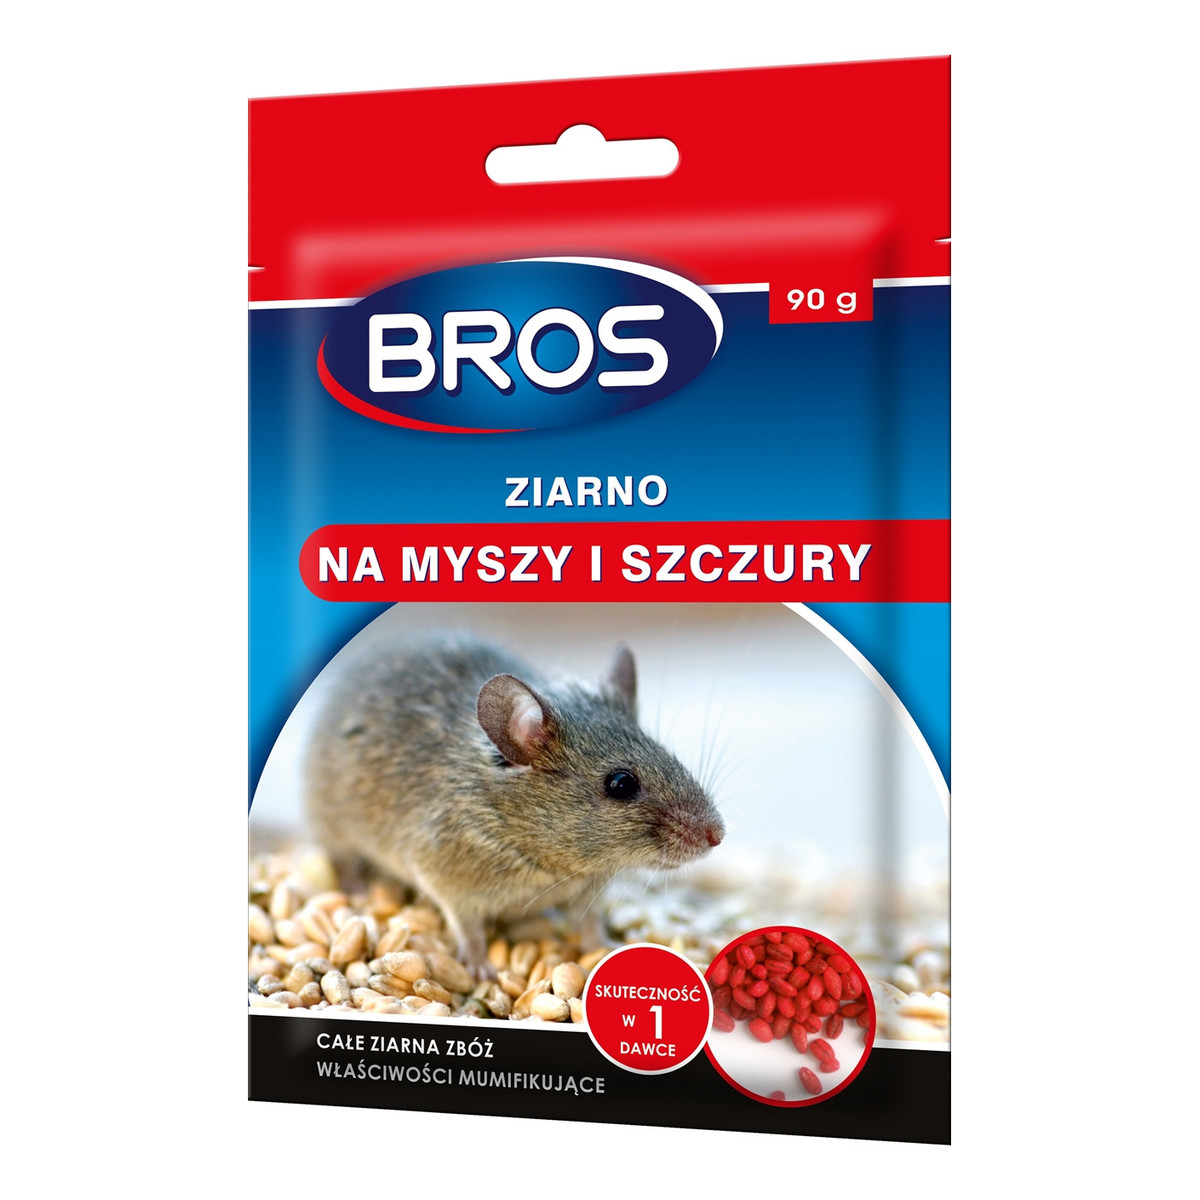 Bros Ziarno na myszy i szczury 90g